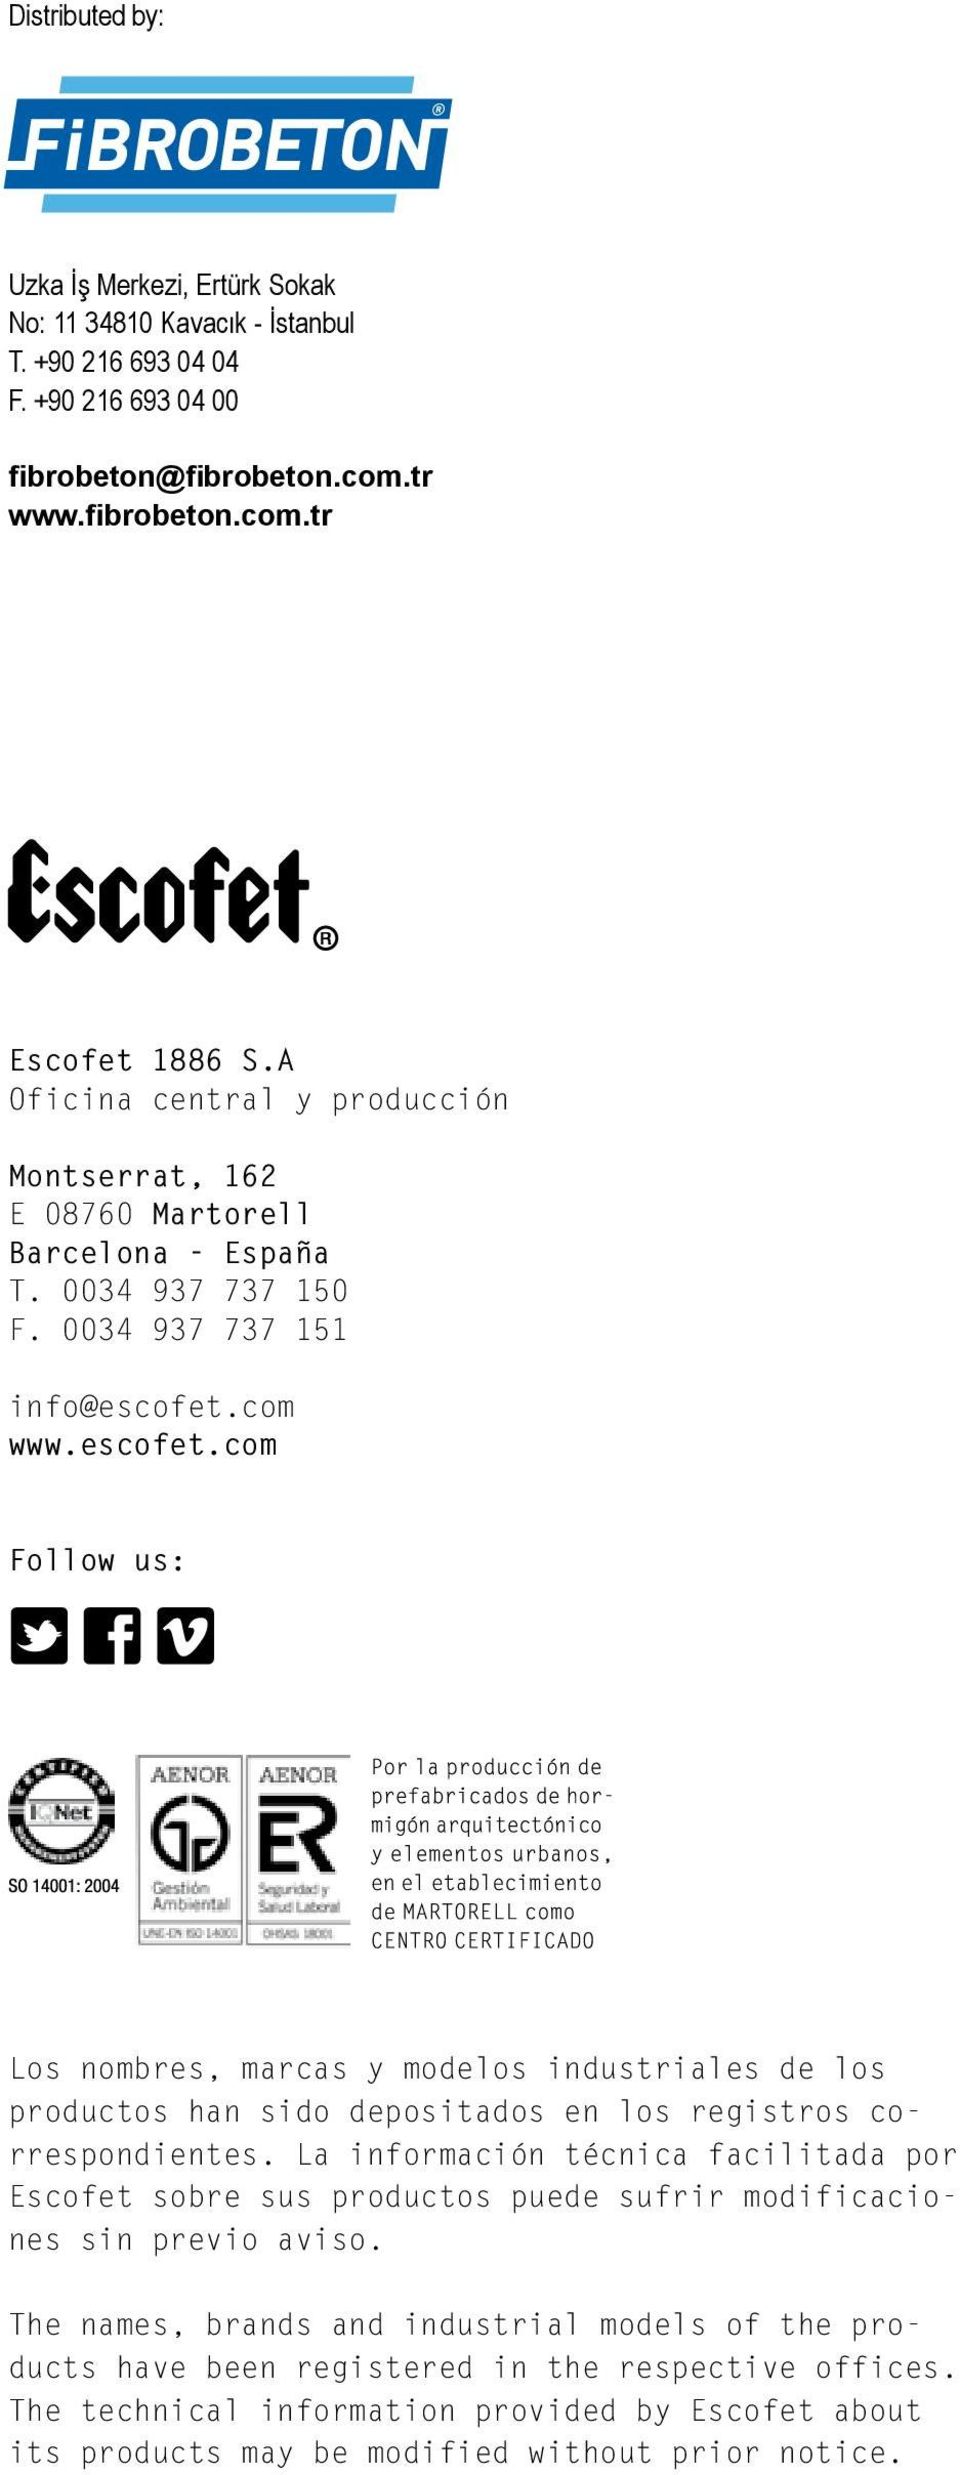 com www.escofet.com Follow us: Los nombres, marcas y modelos industriales de los productos han sido depositados en los registros correspondientes.